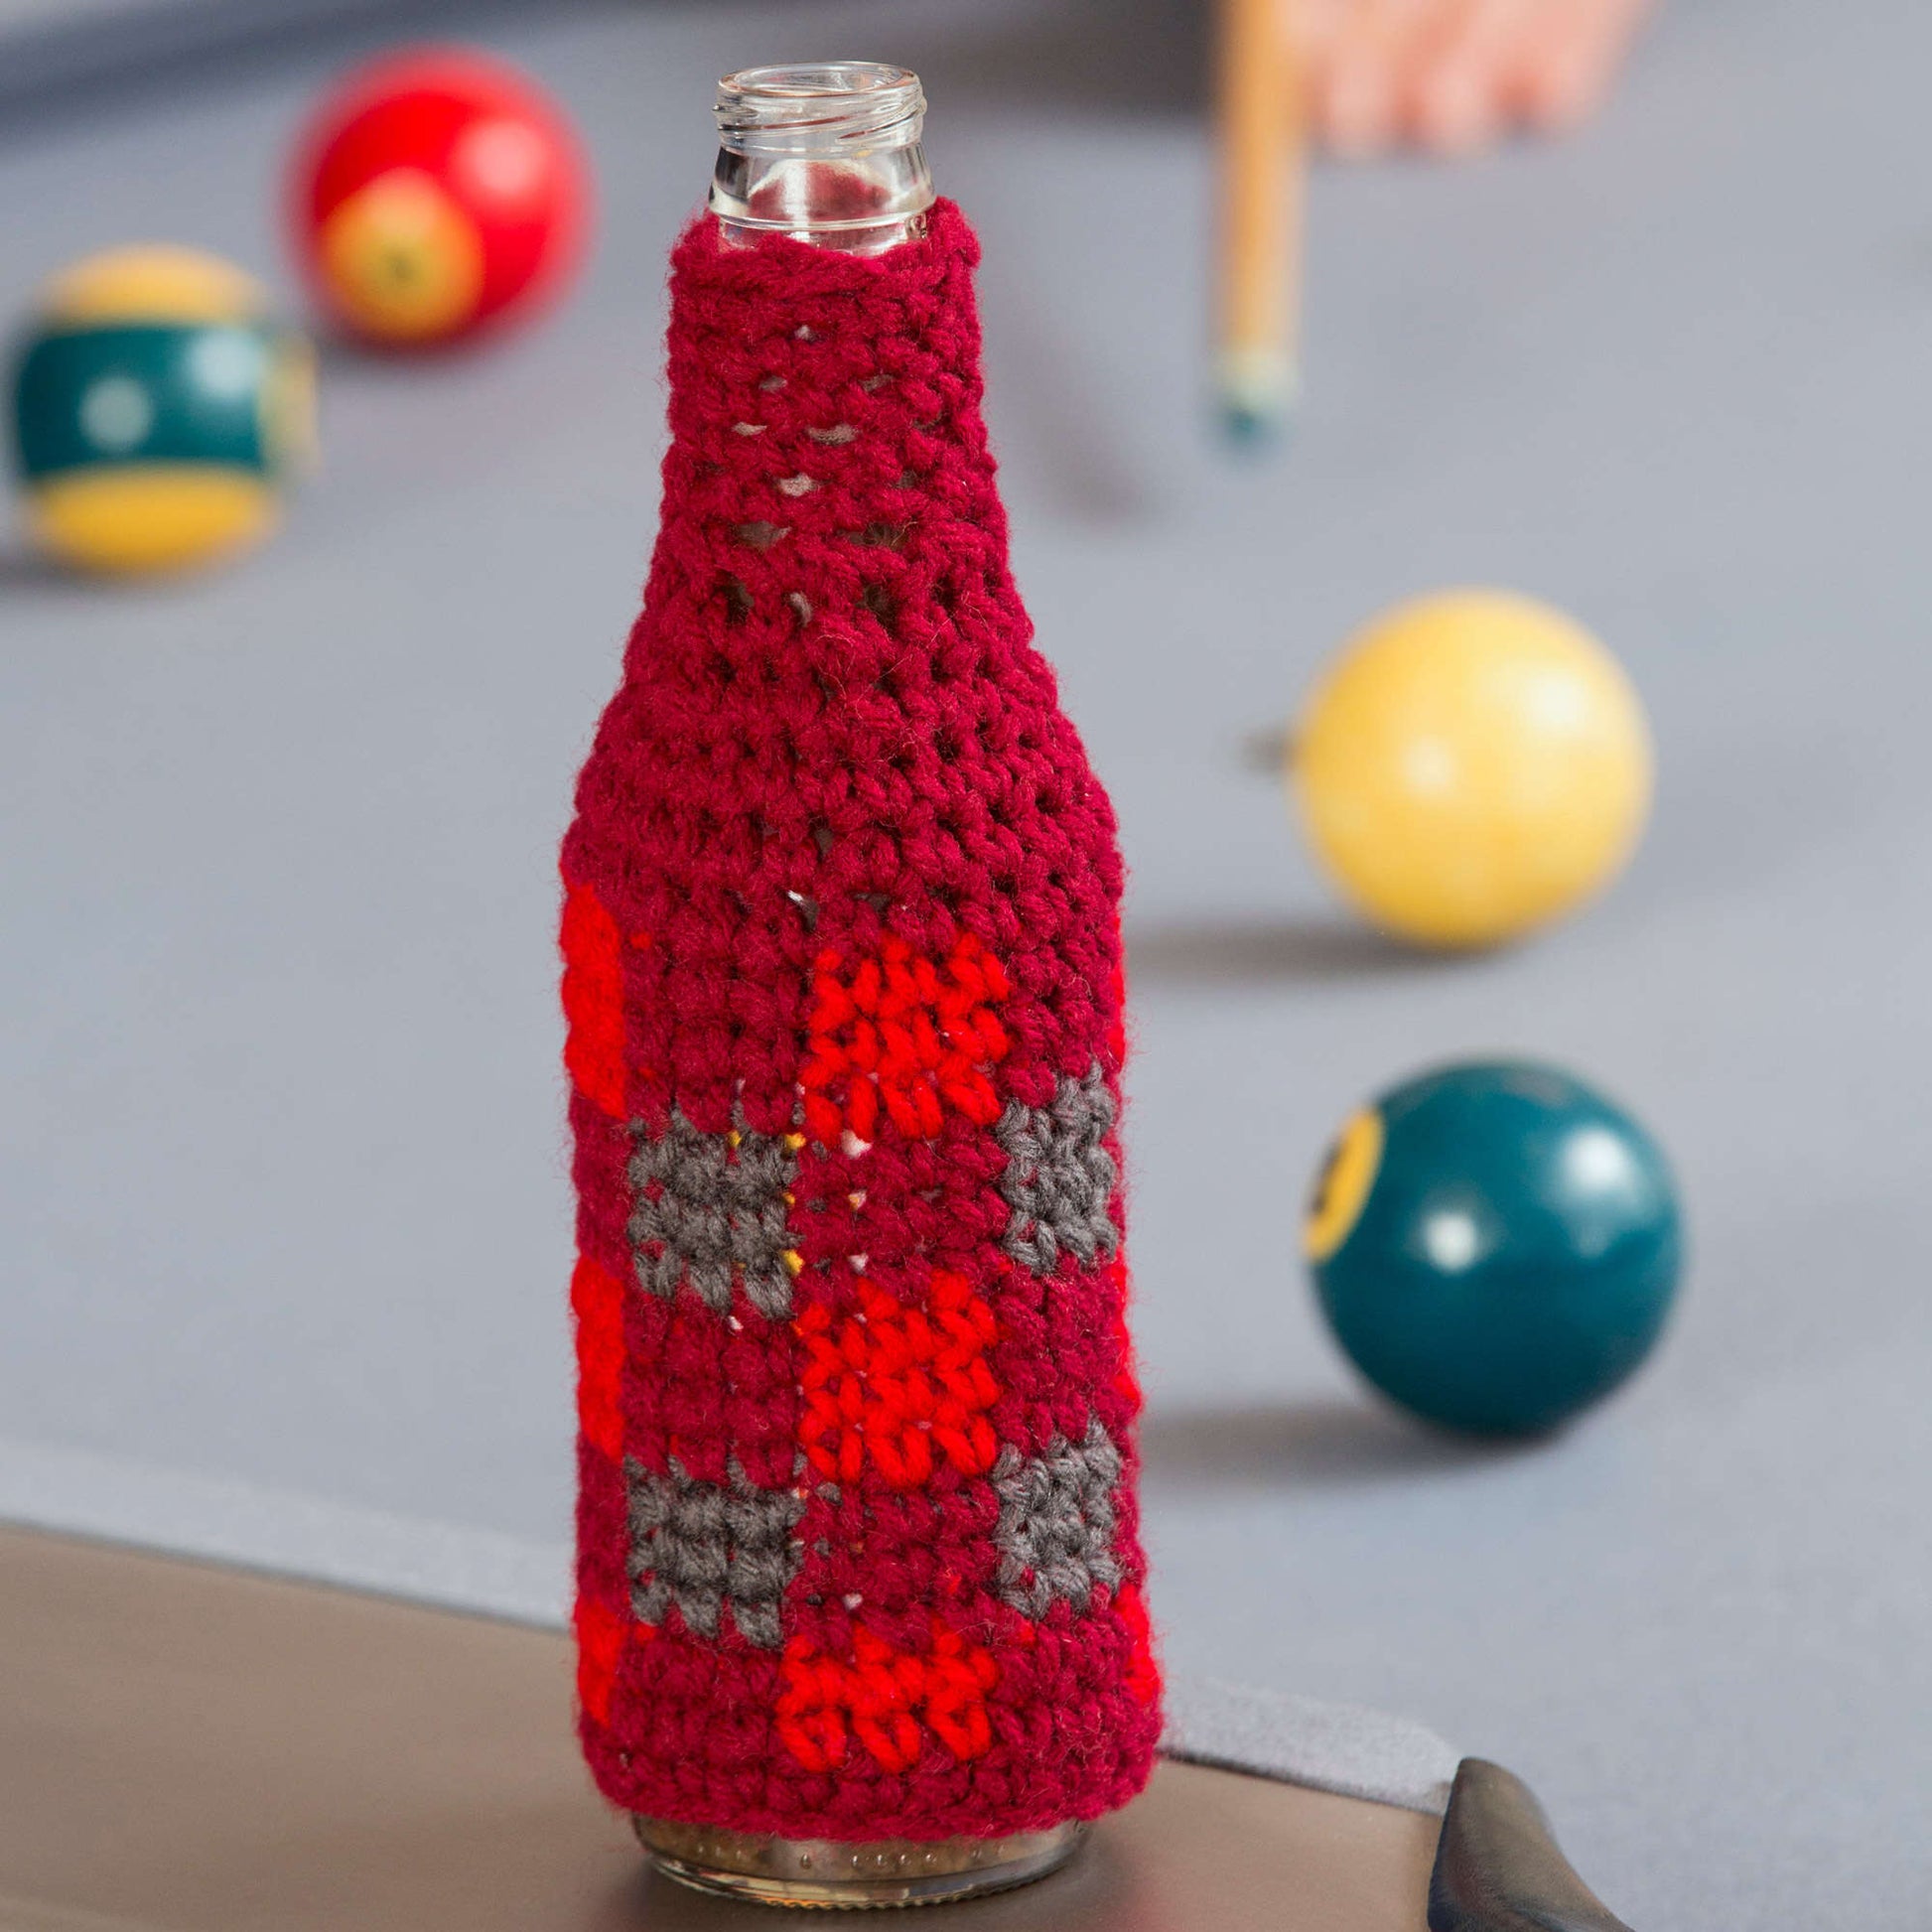 Free Red Heart Buffalo Plaid Bottle Cozy Crochet Pattern